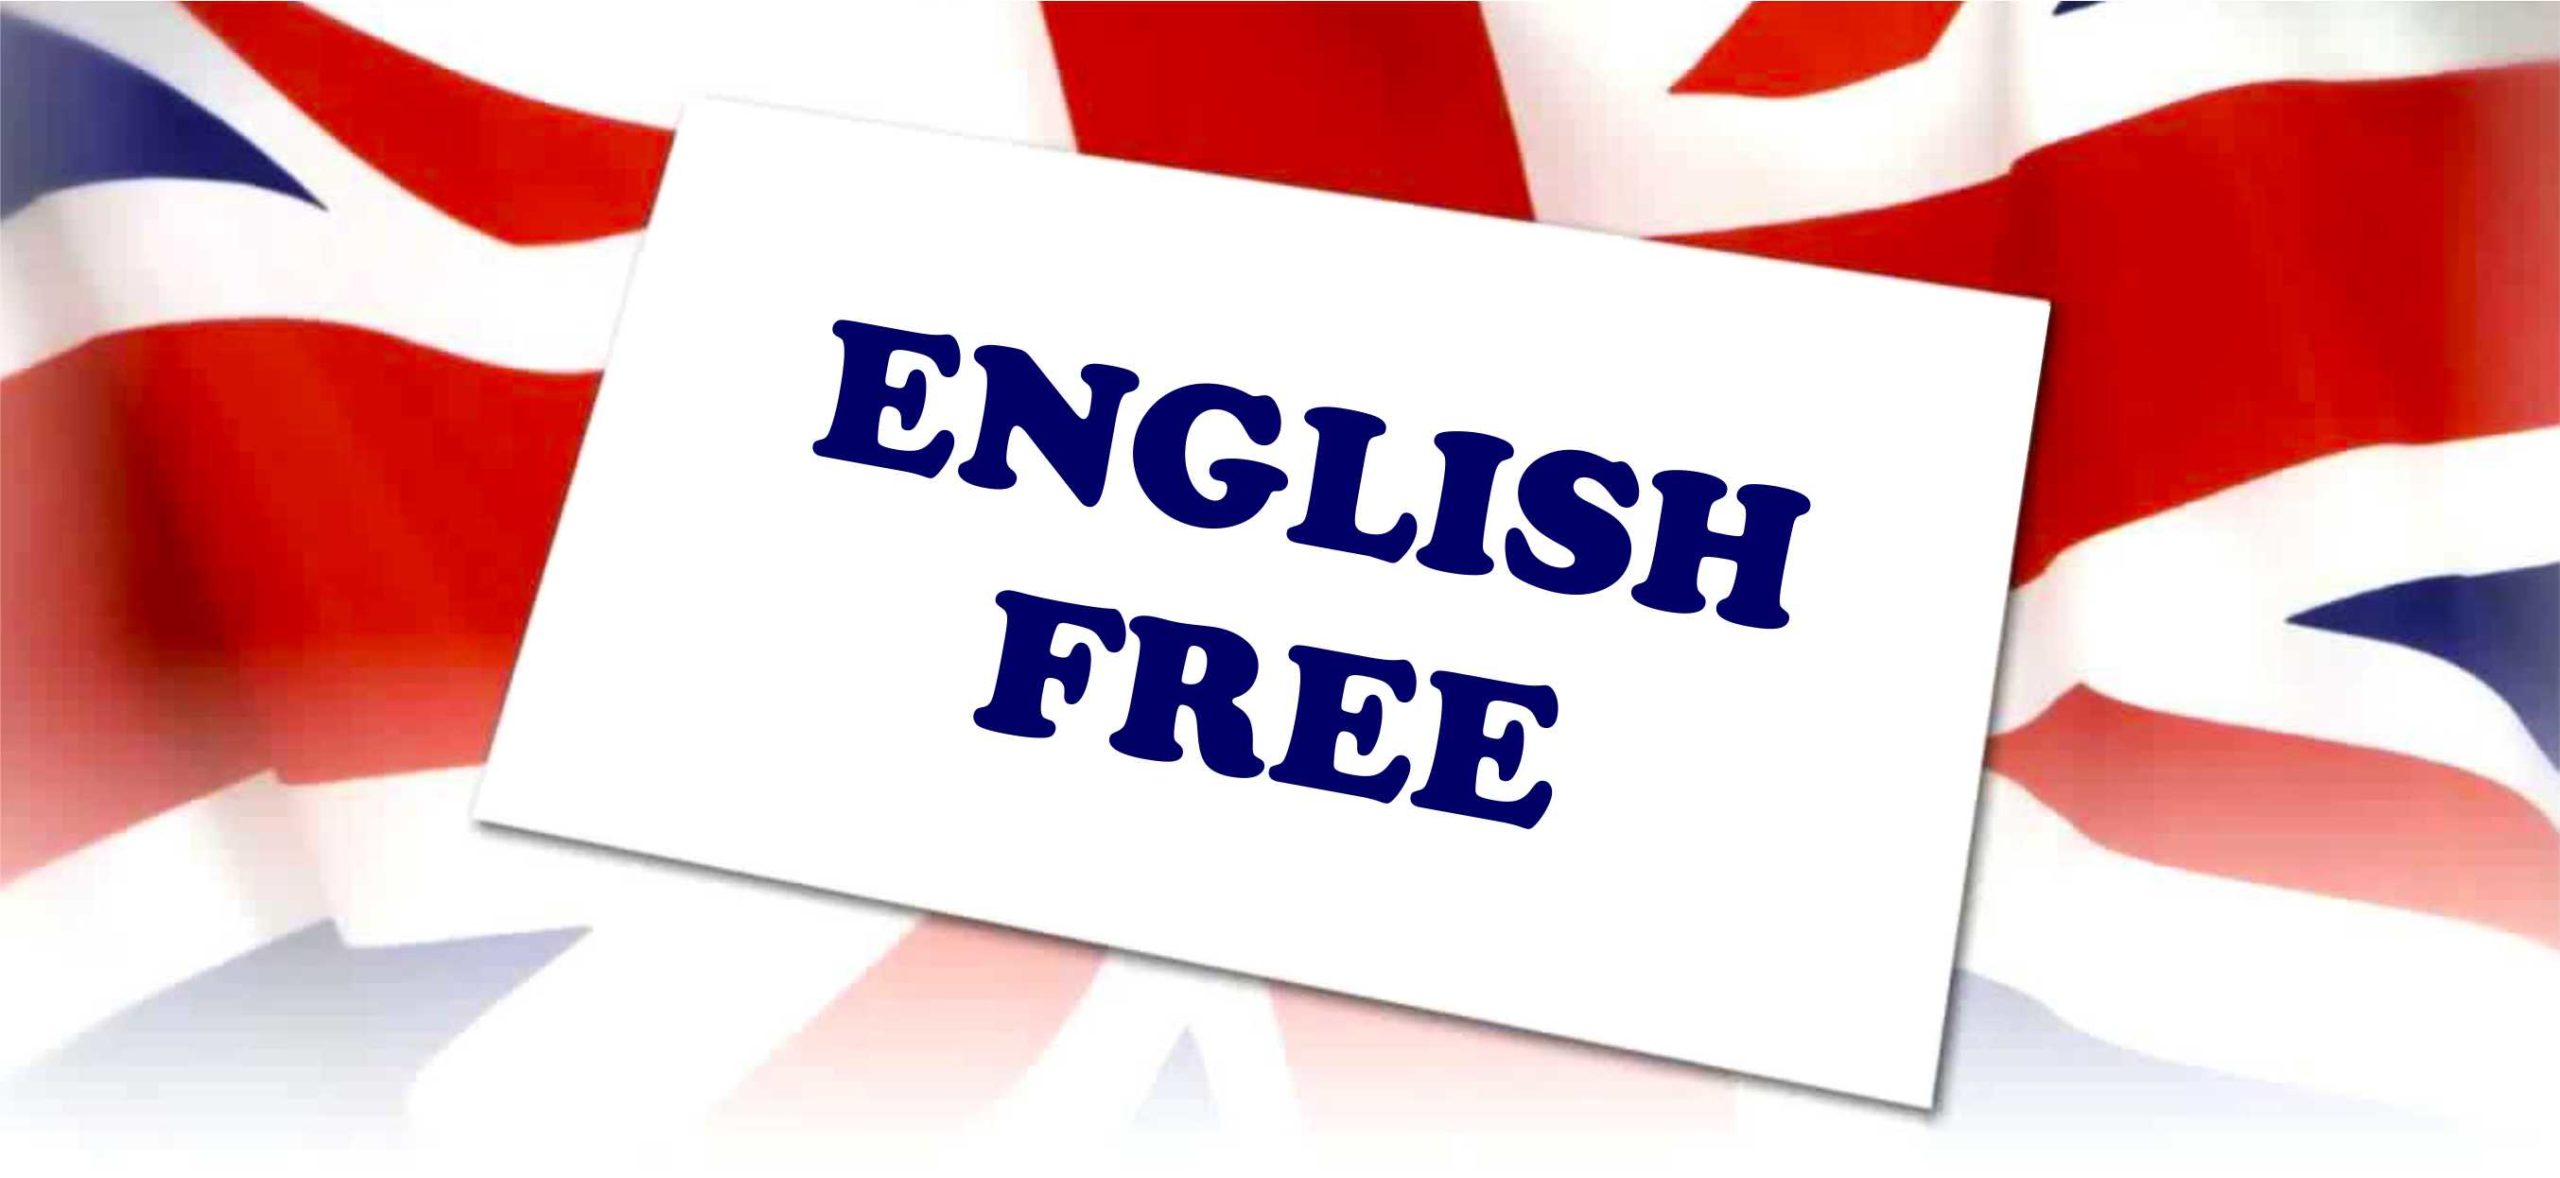 Топ-10 сайтов для изучения английского языка бесплатно